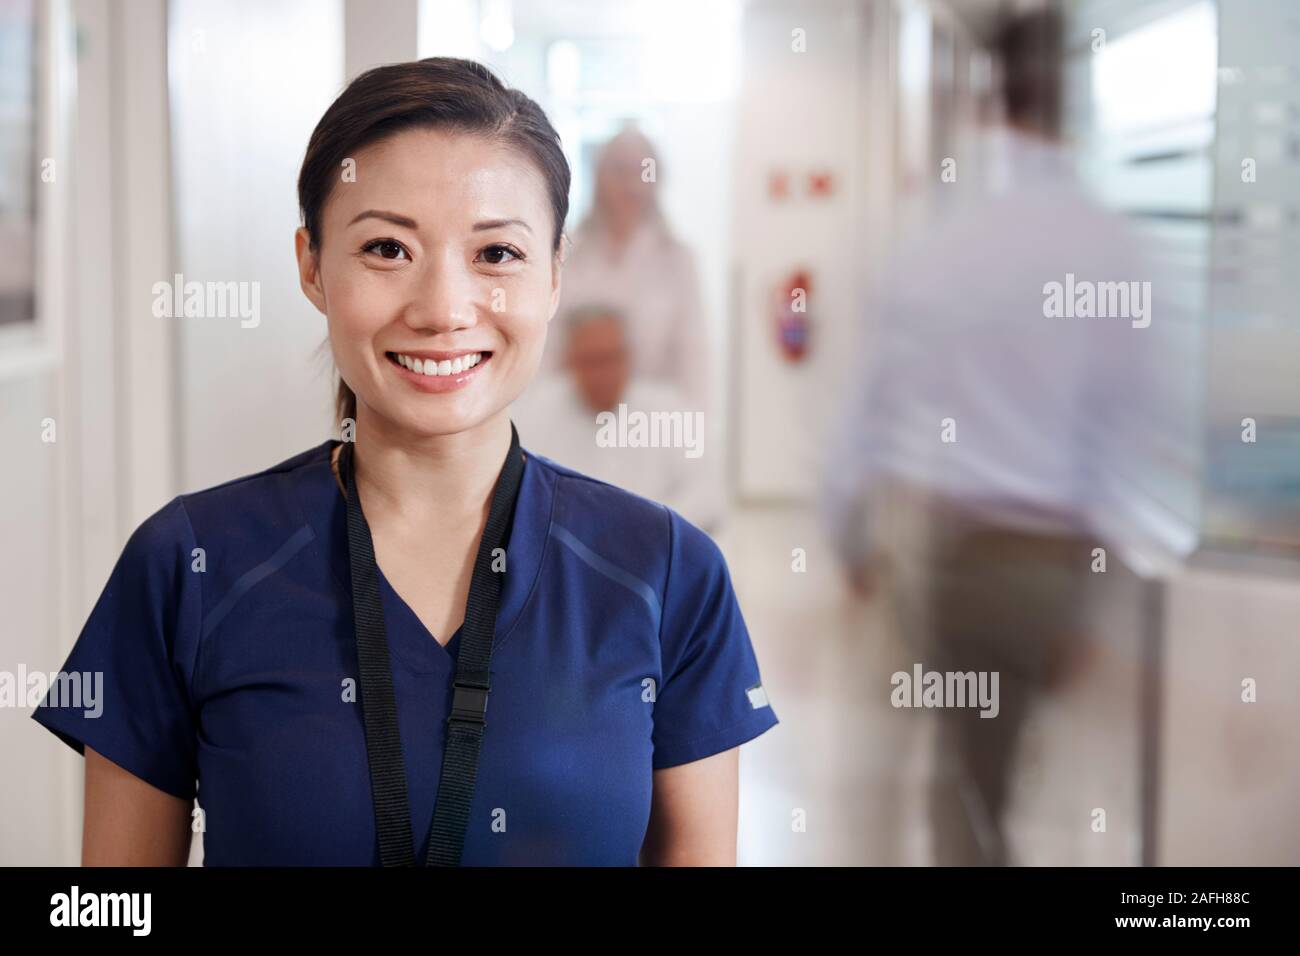 Portrait Of Smiling Female Nurse Wearing Scrubs dans les couloir de l'hôpital Banque D'Images